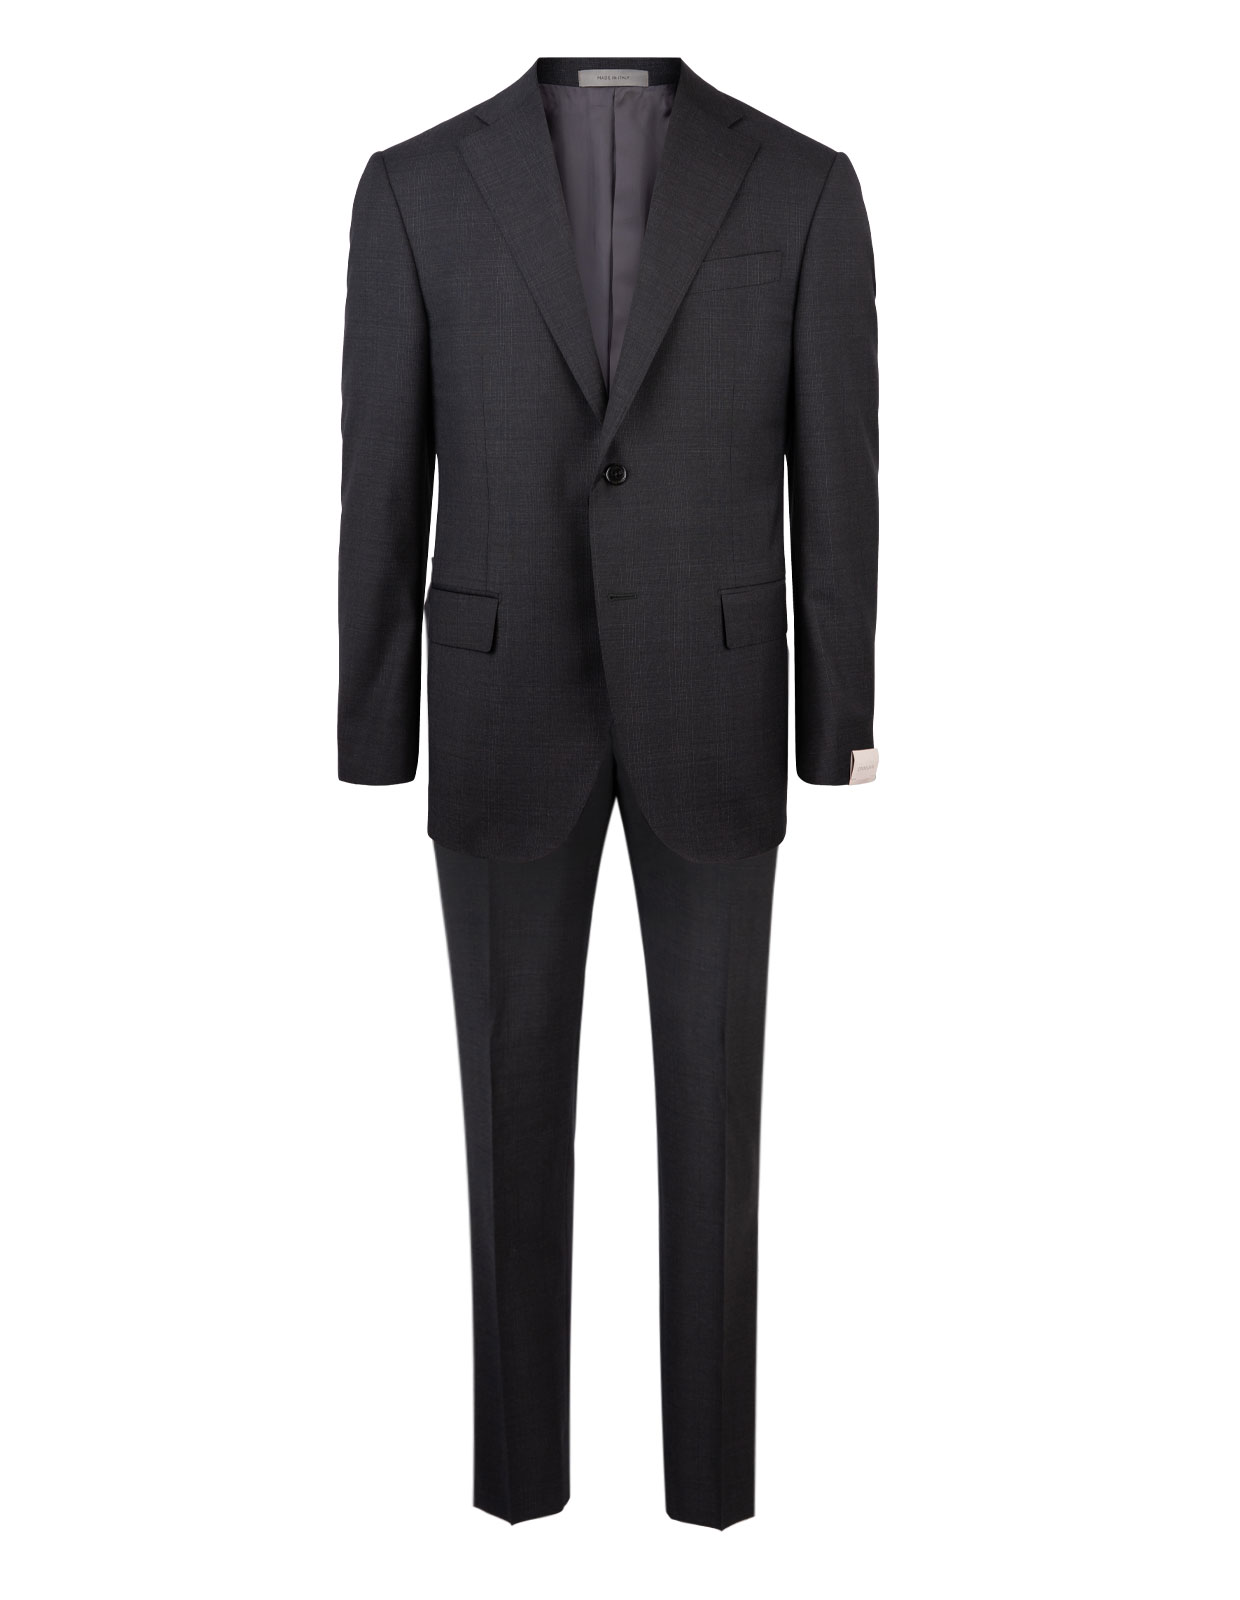 Leader Suit Wool Grey Check Stl 48